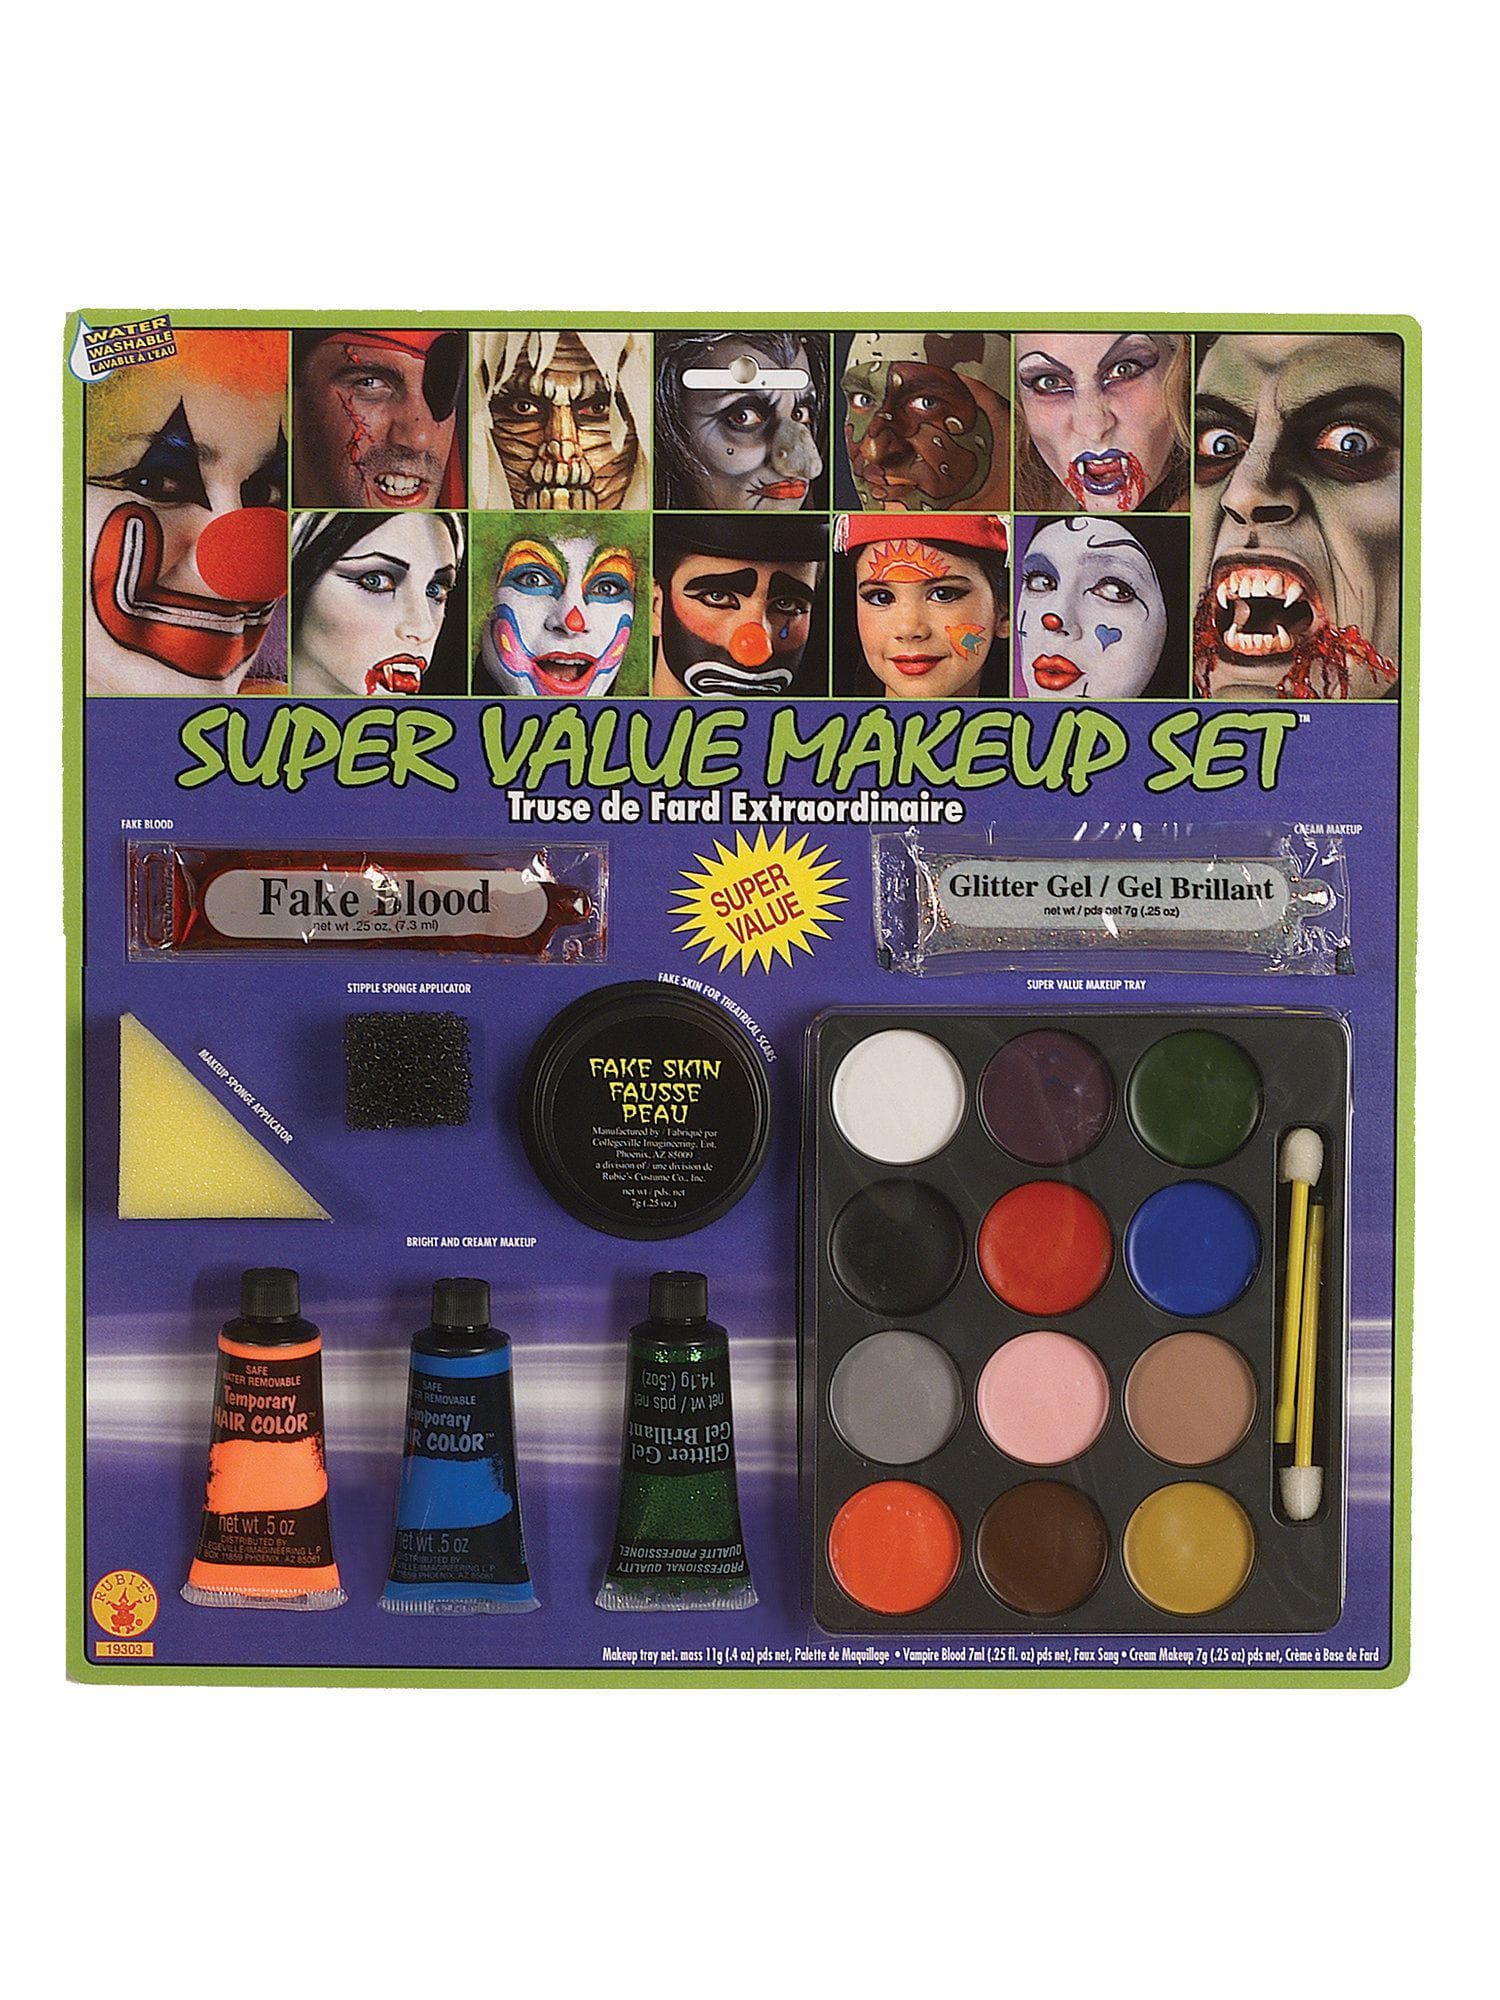 Super Value Makeup Set - costumes.com